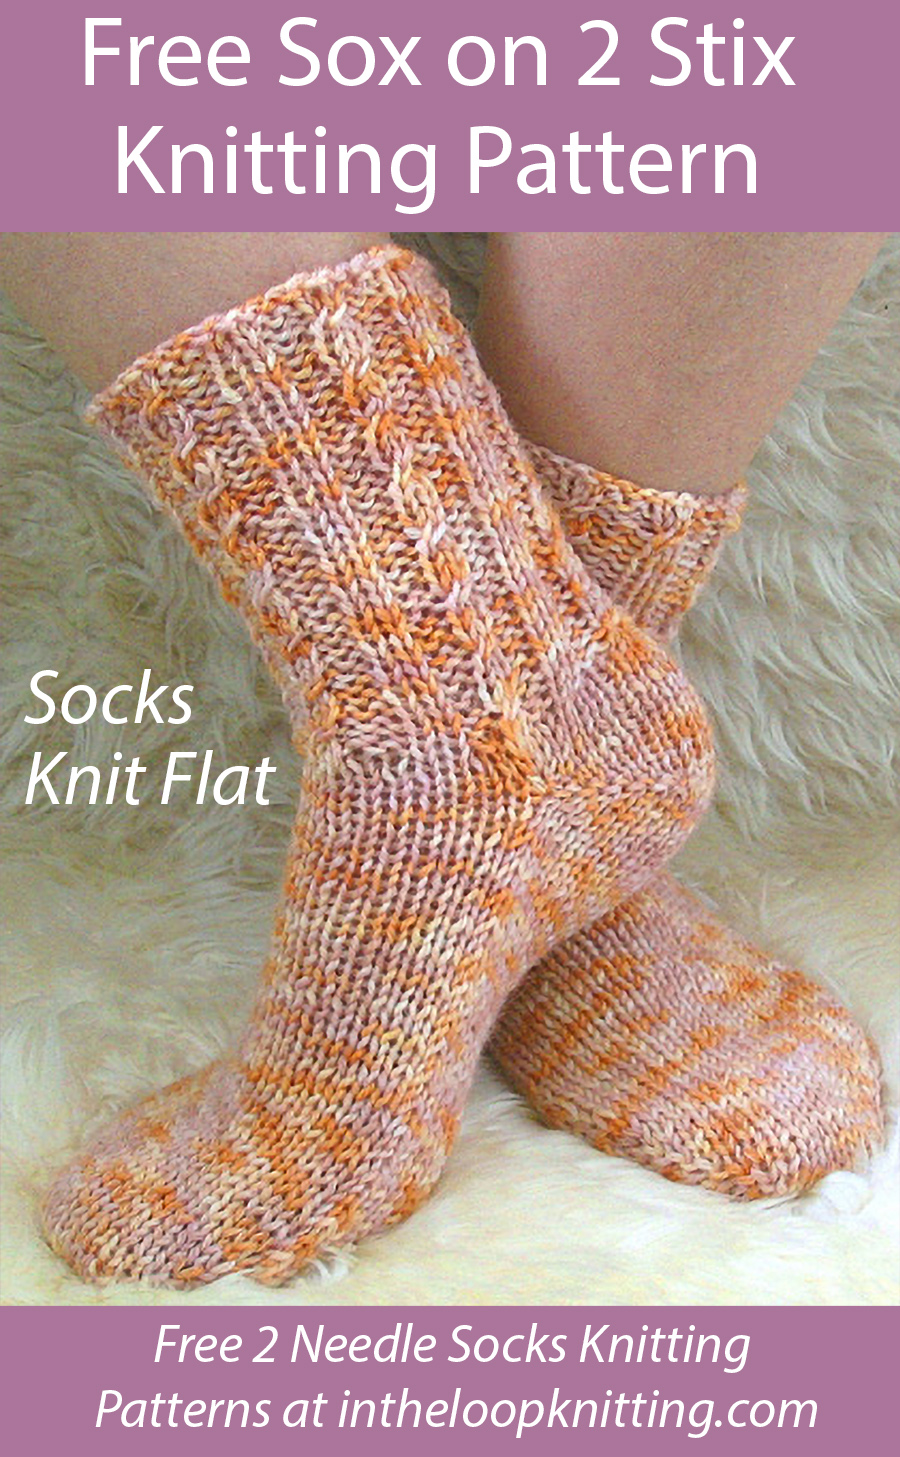 Free Sox on 2 Stix Knit Flat Knitting Pattern 21